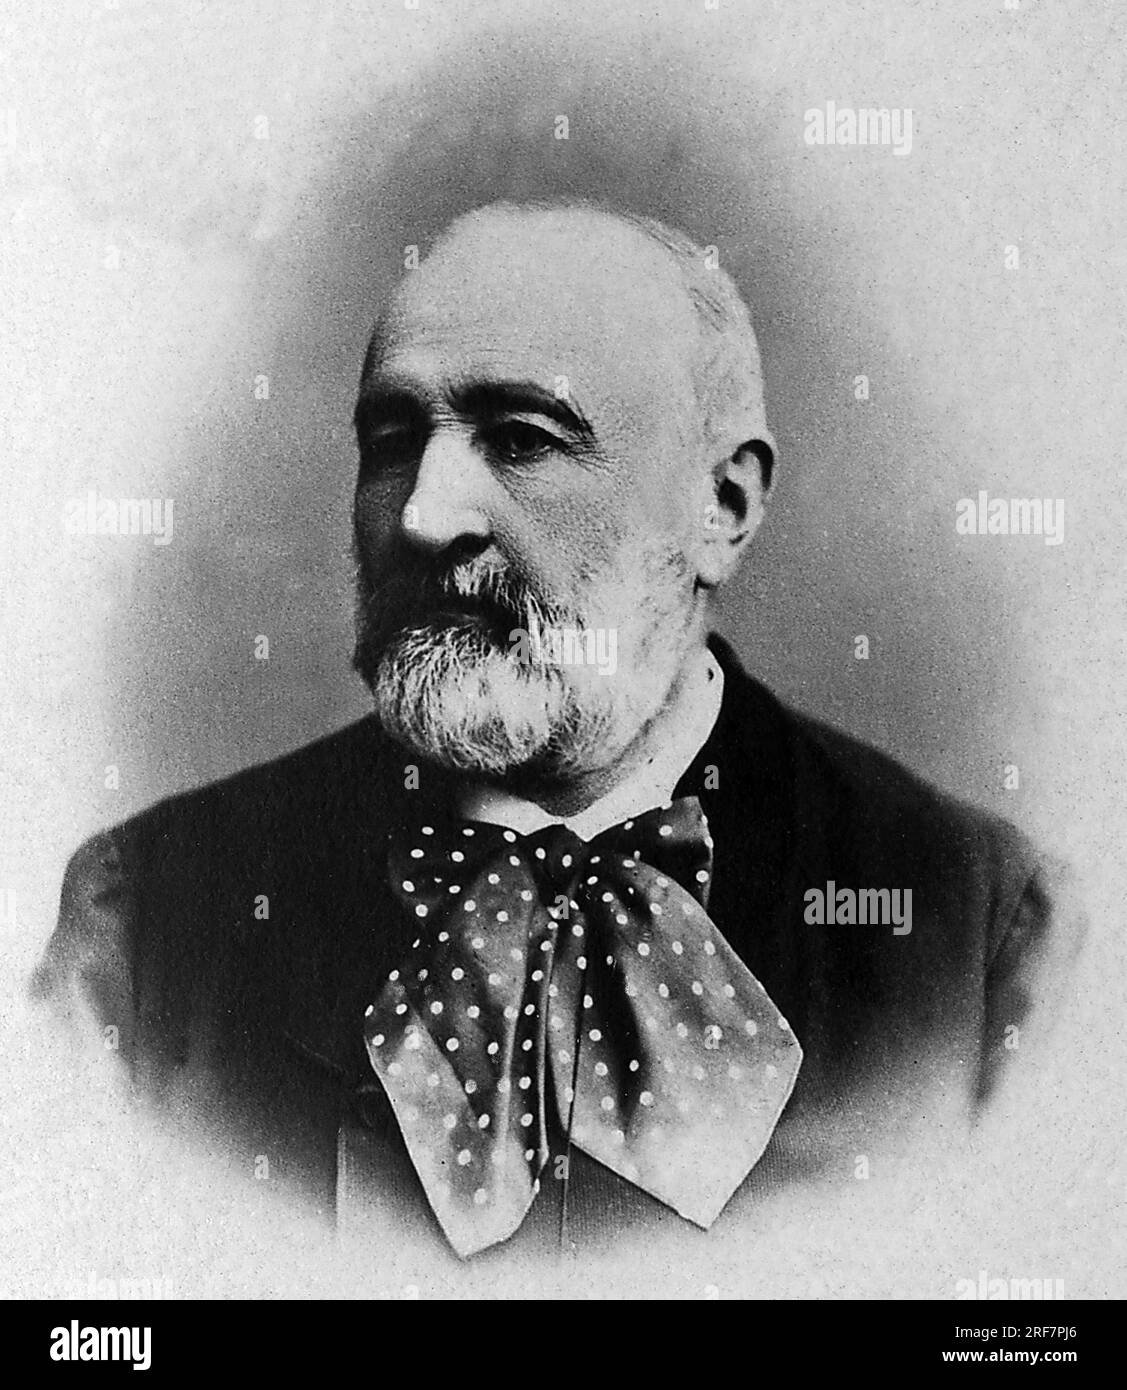 Jean-Charles (Jean Charles) Alphand (1817-1891), ingenieur de Napoleon III, il participa a la renovation de Paris avec le Baron Haussmann de 1852 a 1870. Stock Photo